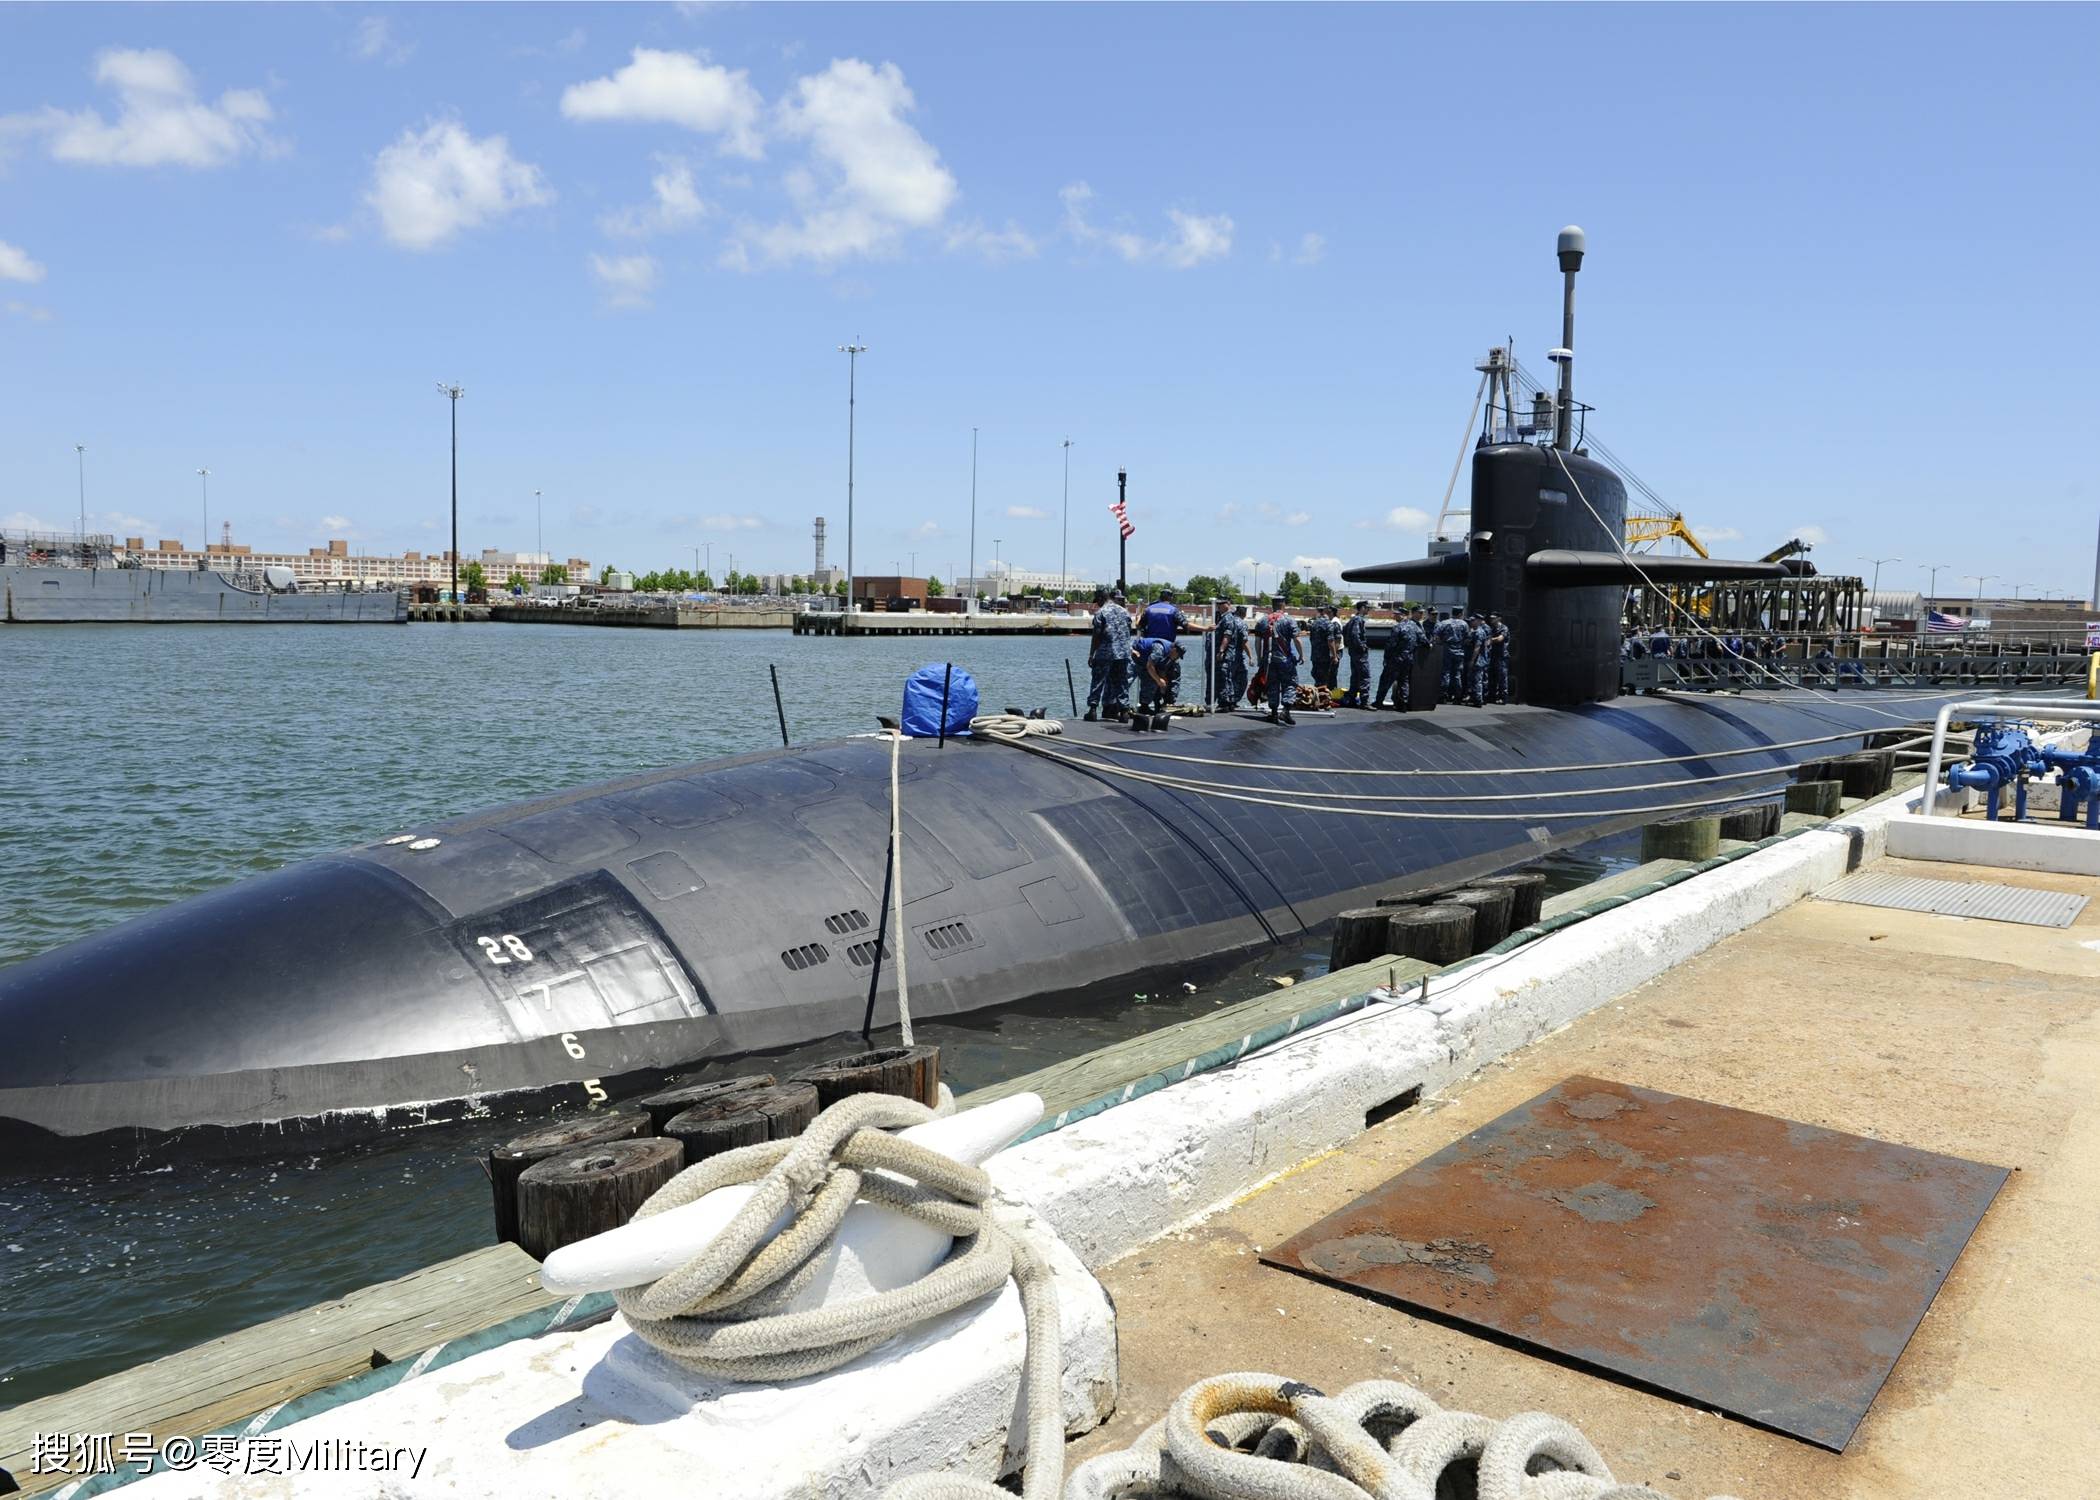 美国和俄罗斯的核潜艇同时出现在古巴 究竟是巧合还是蓄意挑衅?